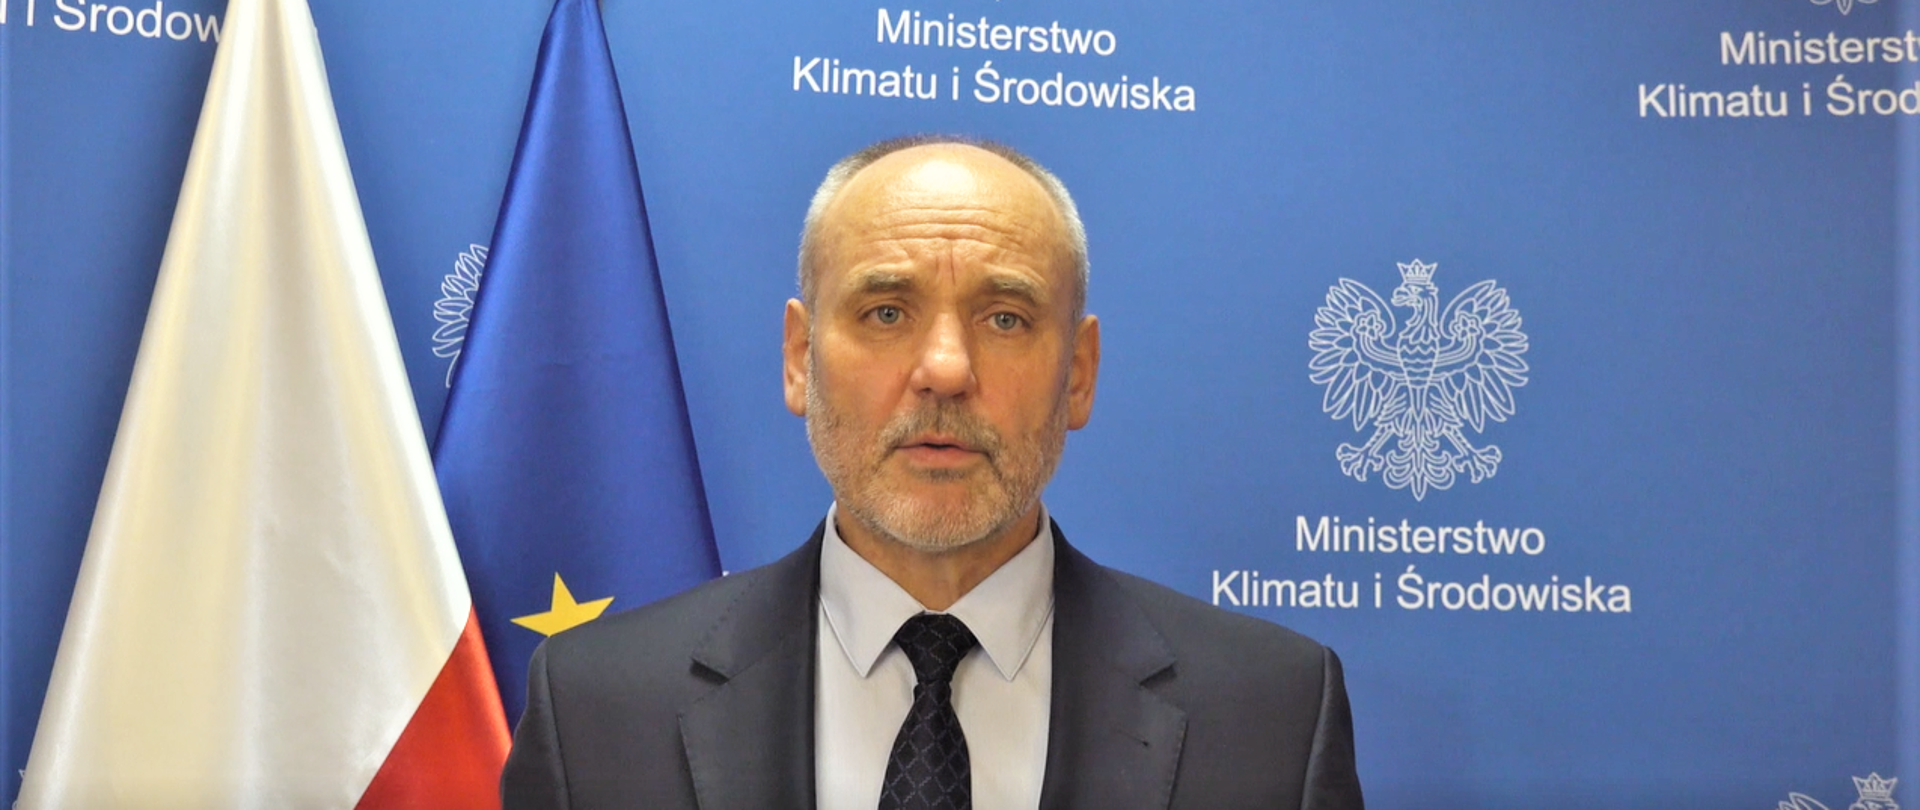 Piotr Dziadzio, podsekretarz stanu, Główny Geolog Kraju, Pełnomocnik Rządu ds. Polityki Surowcowej Państwa